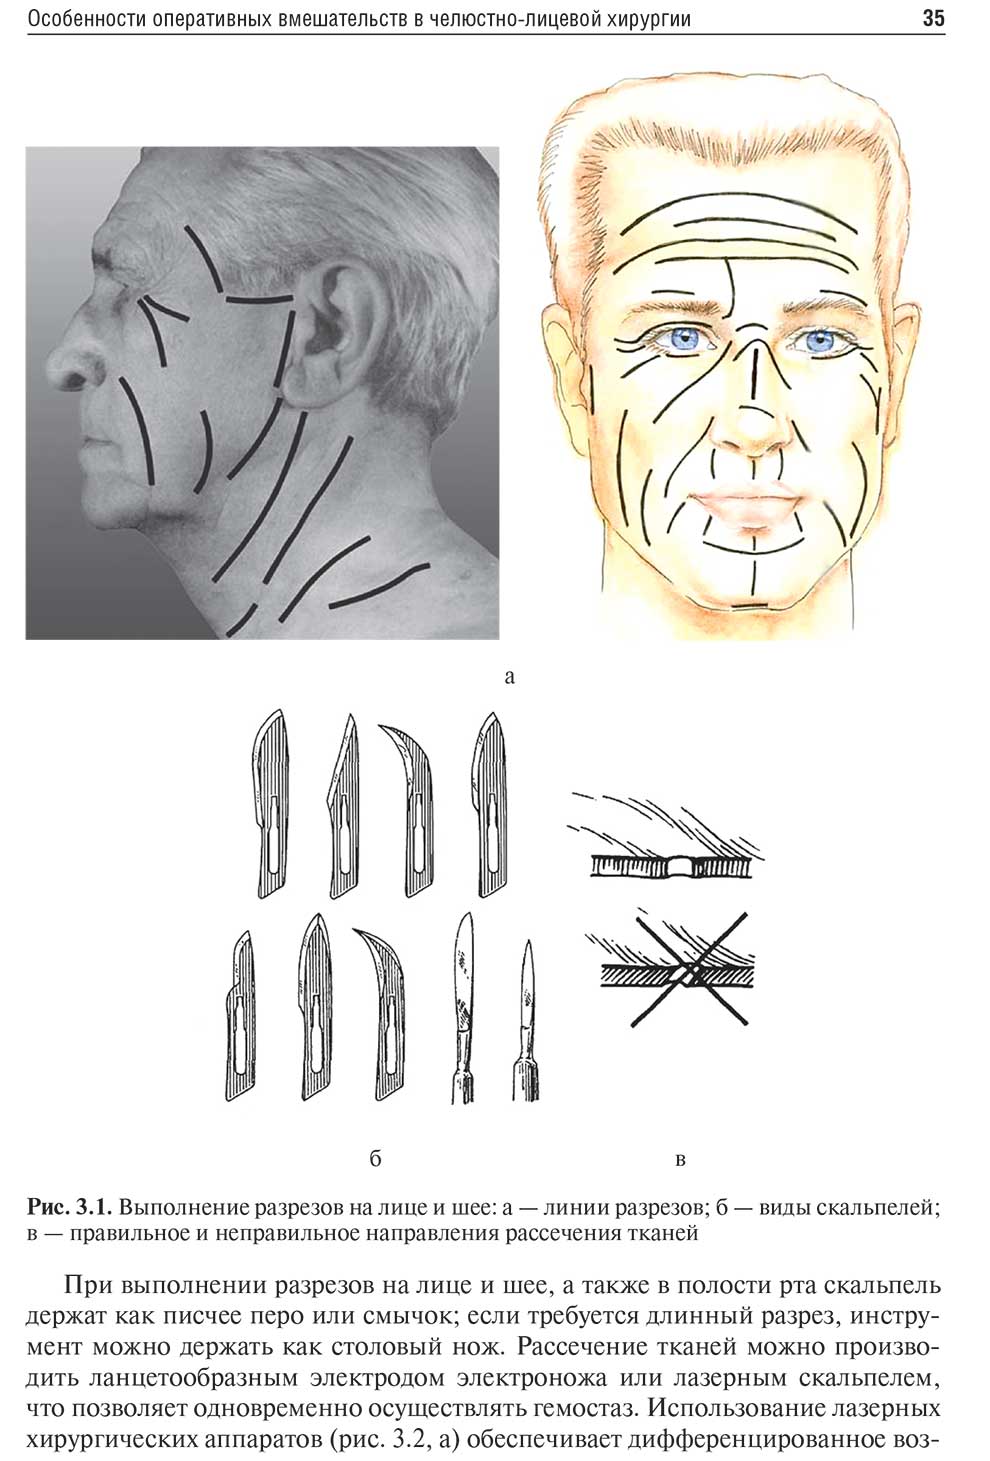 Выполнение разрезов на лице и шее